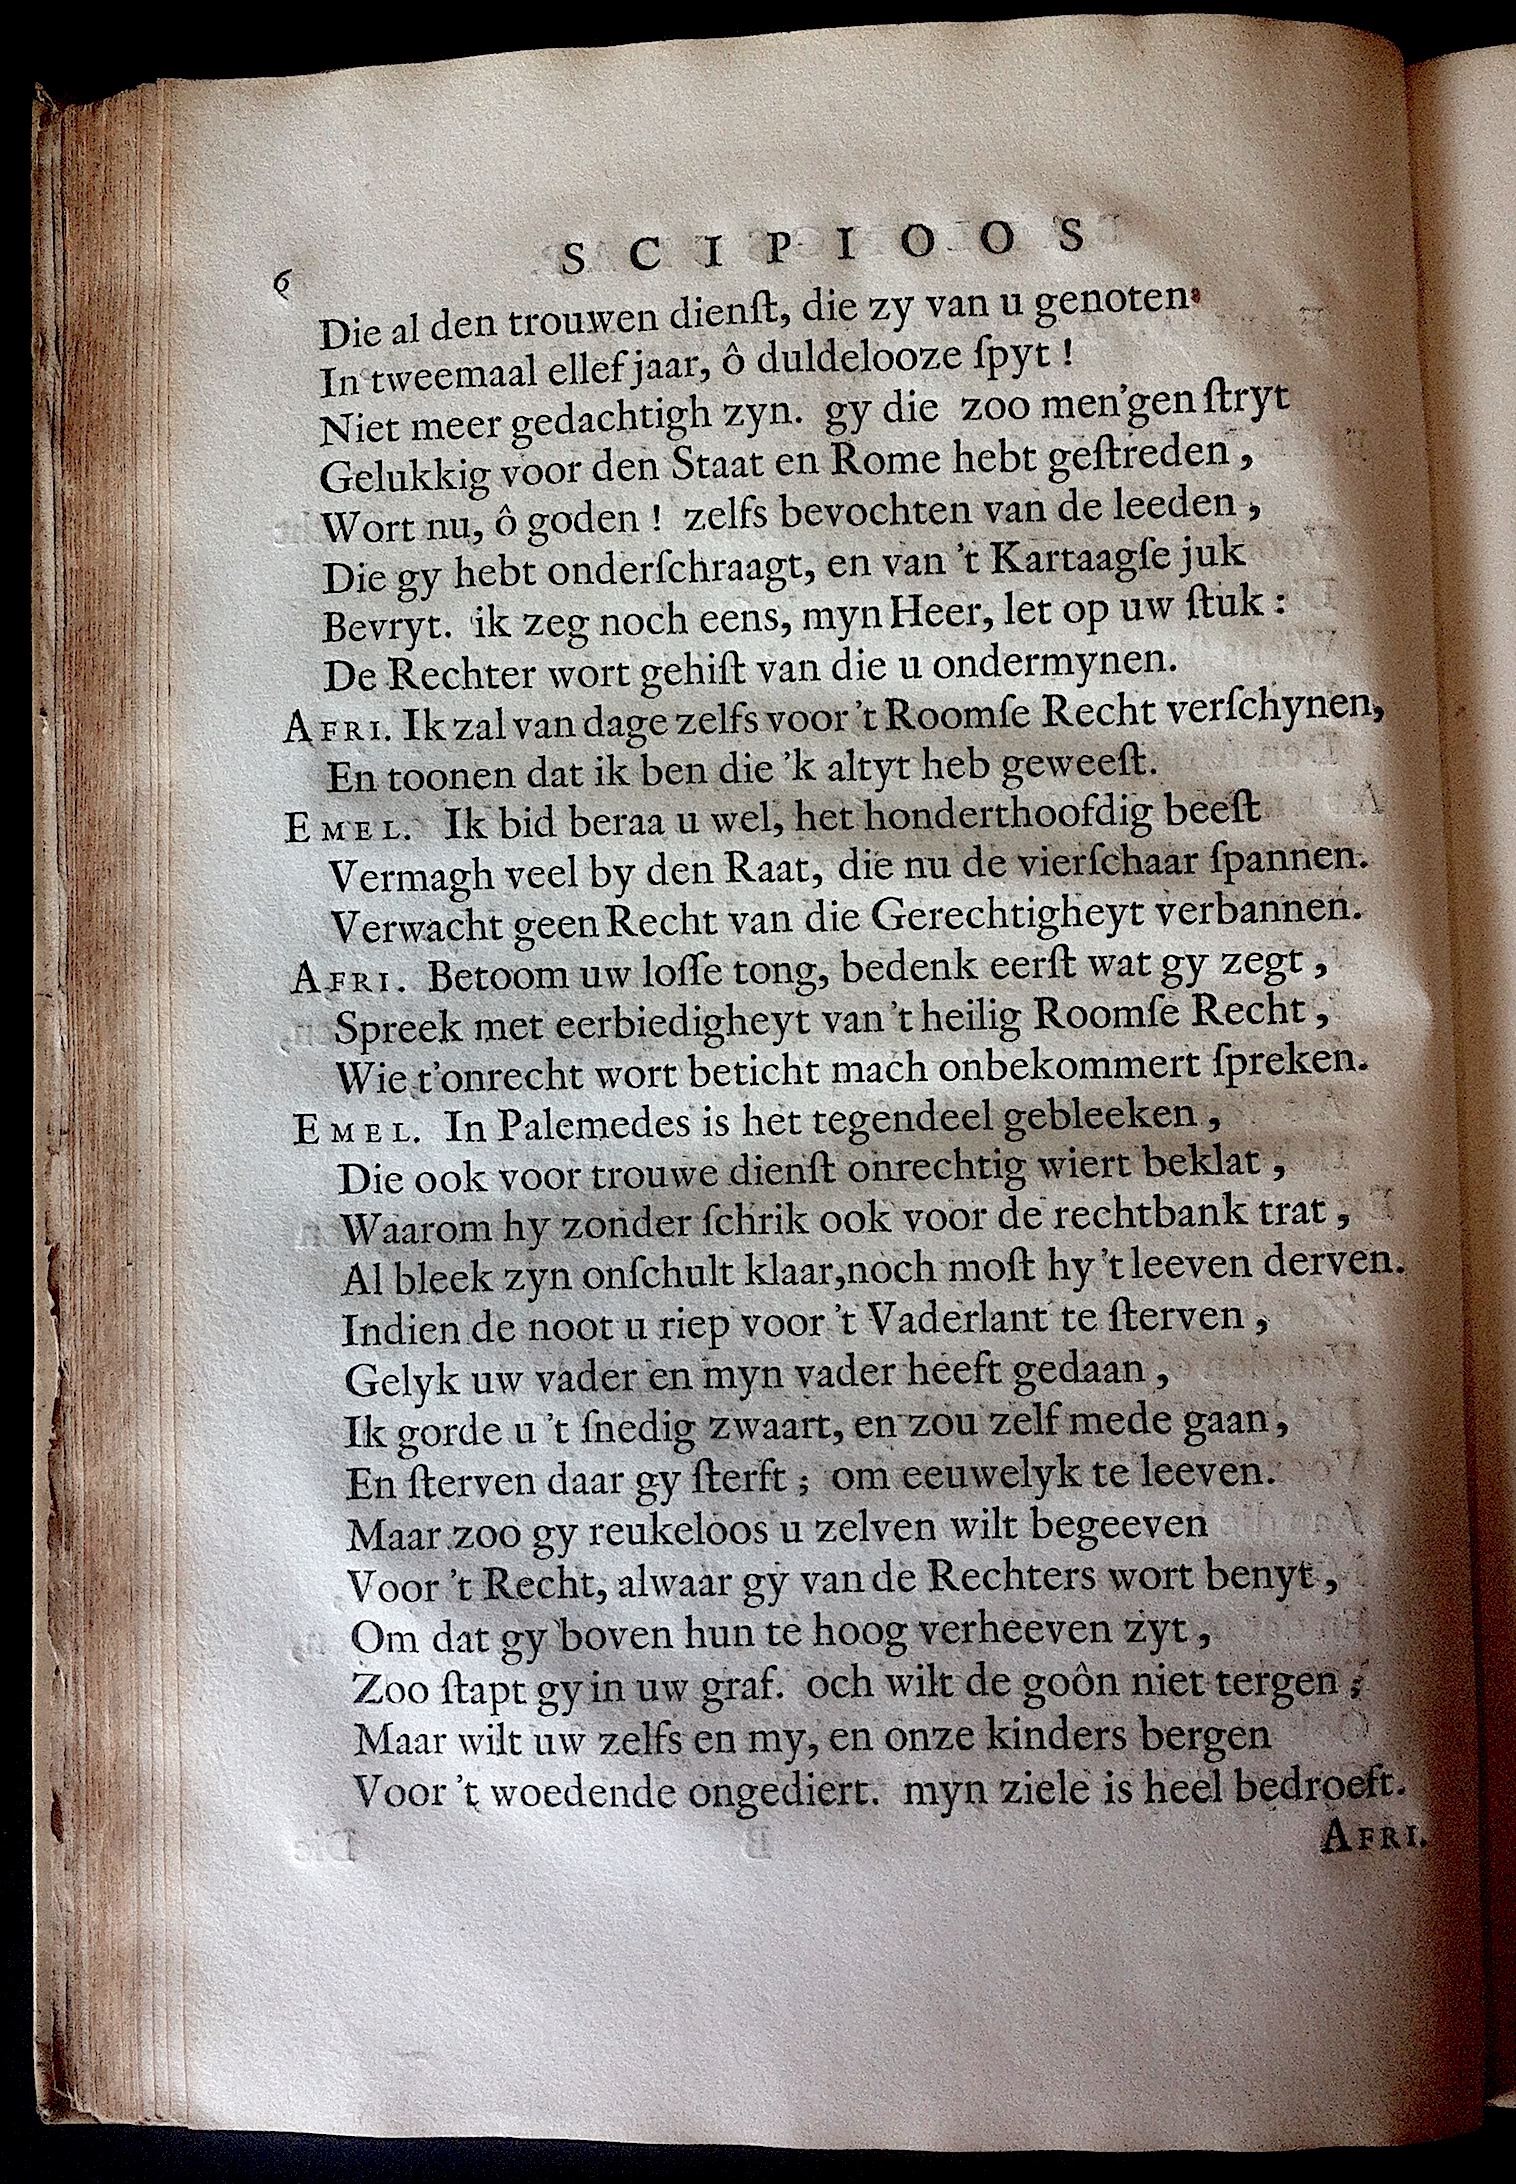 BoccardScipioFolio1658p06